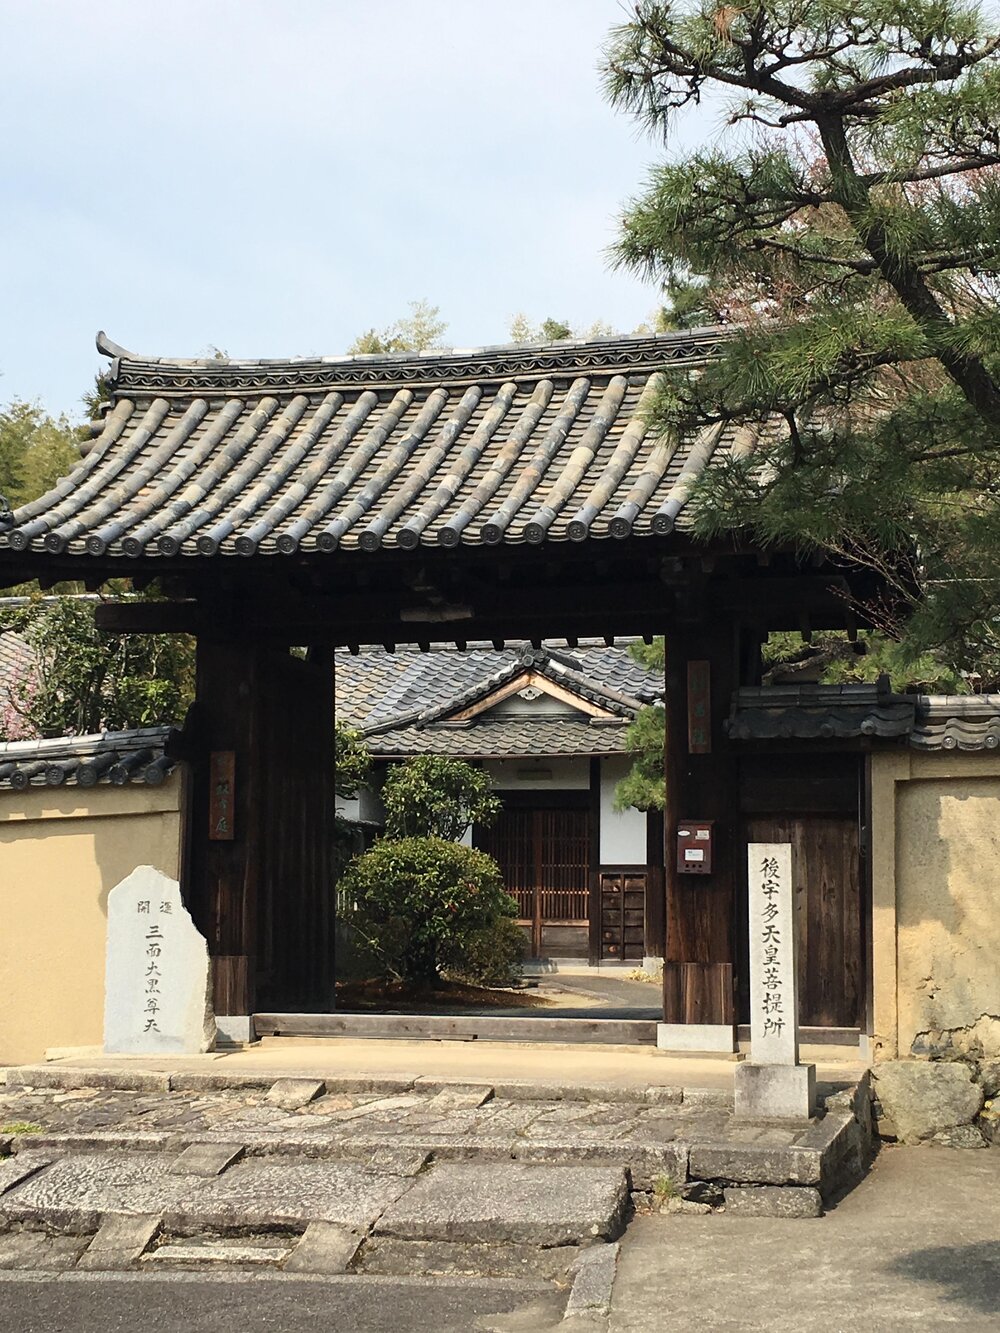 A Gate in Kyoto